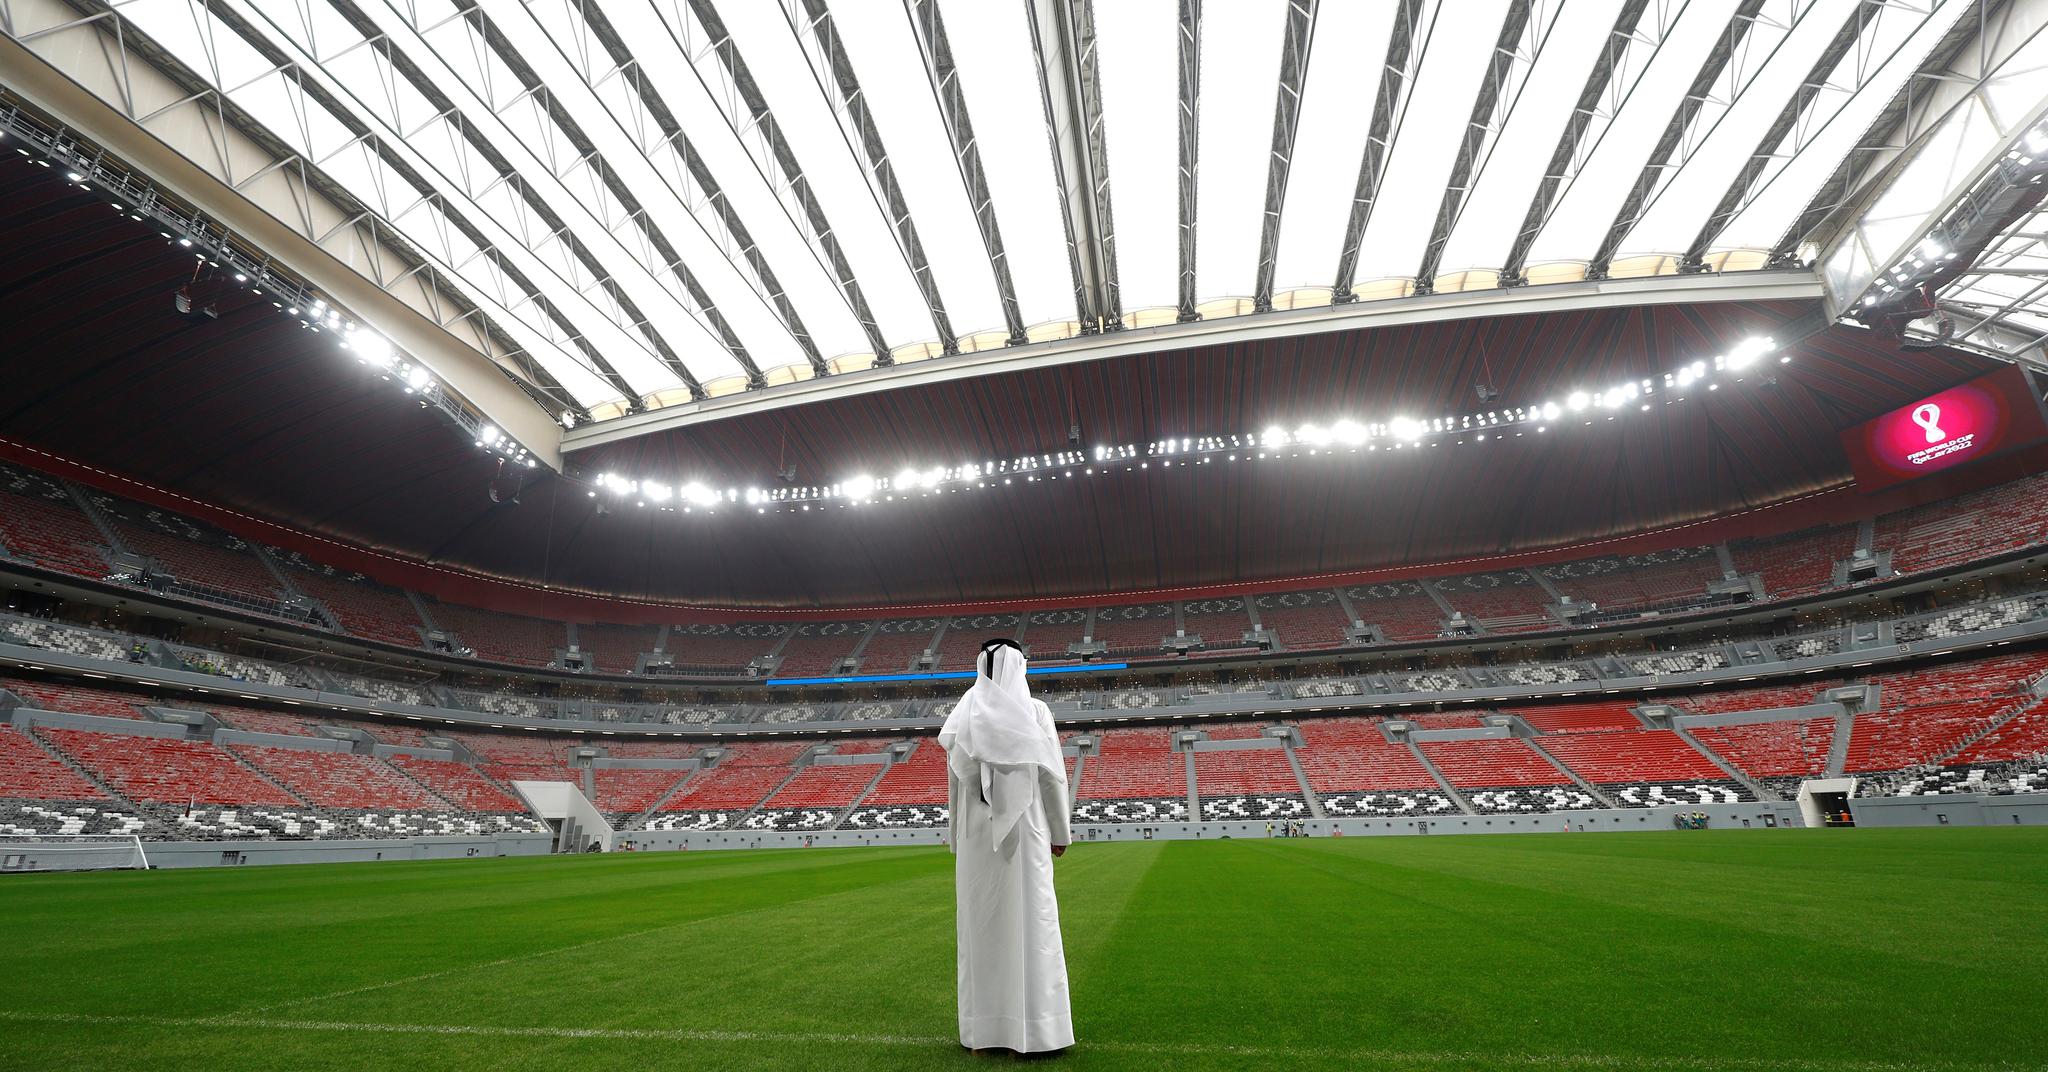 Slik ser VM-arenaen Al Bayt ut fra innsiden. Bildet ble tatt under klubb-VM i desember 2019.